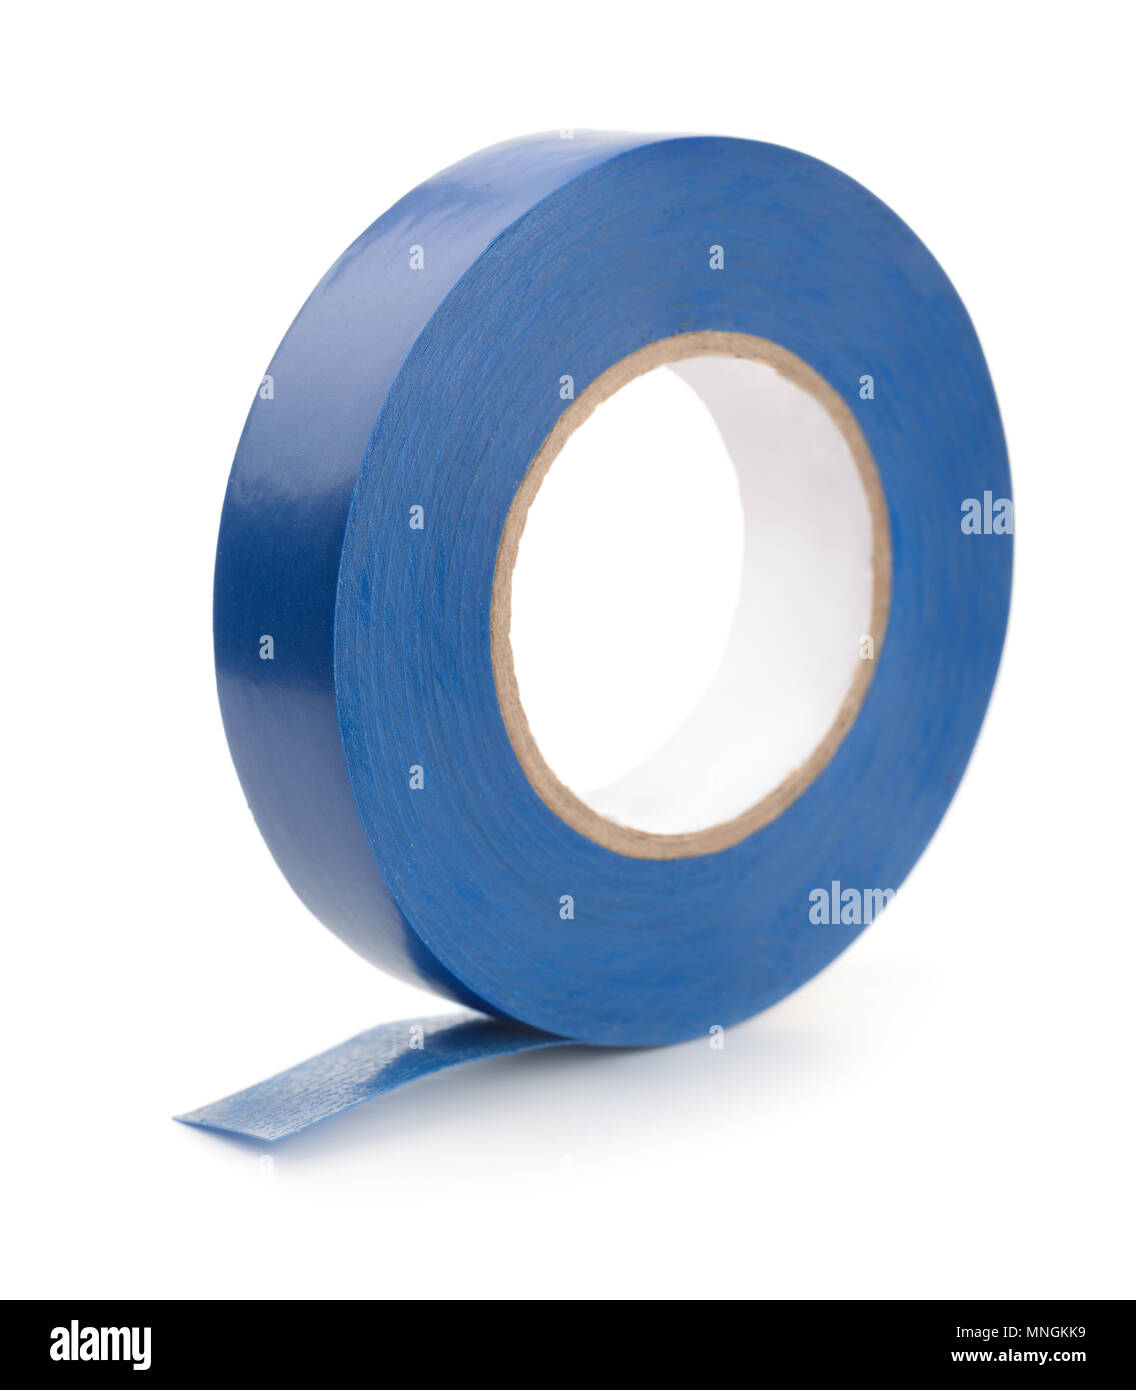 Rouleau de bande de conduit en plastique bleu isolated on white Banque D'Images